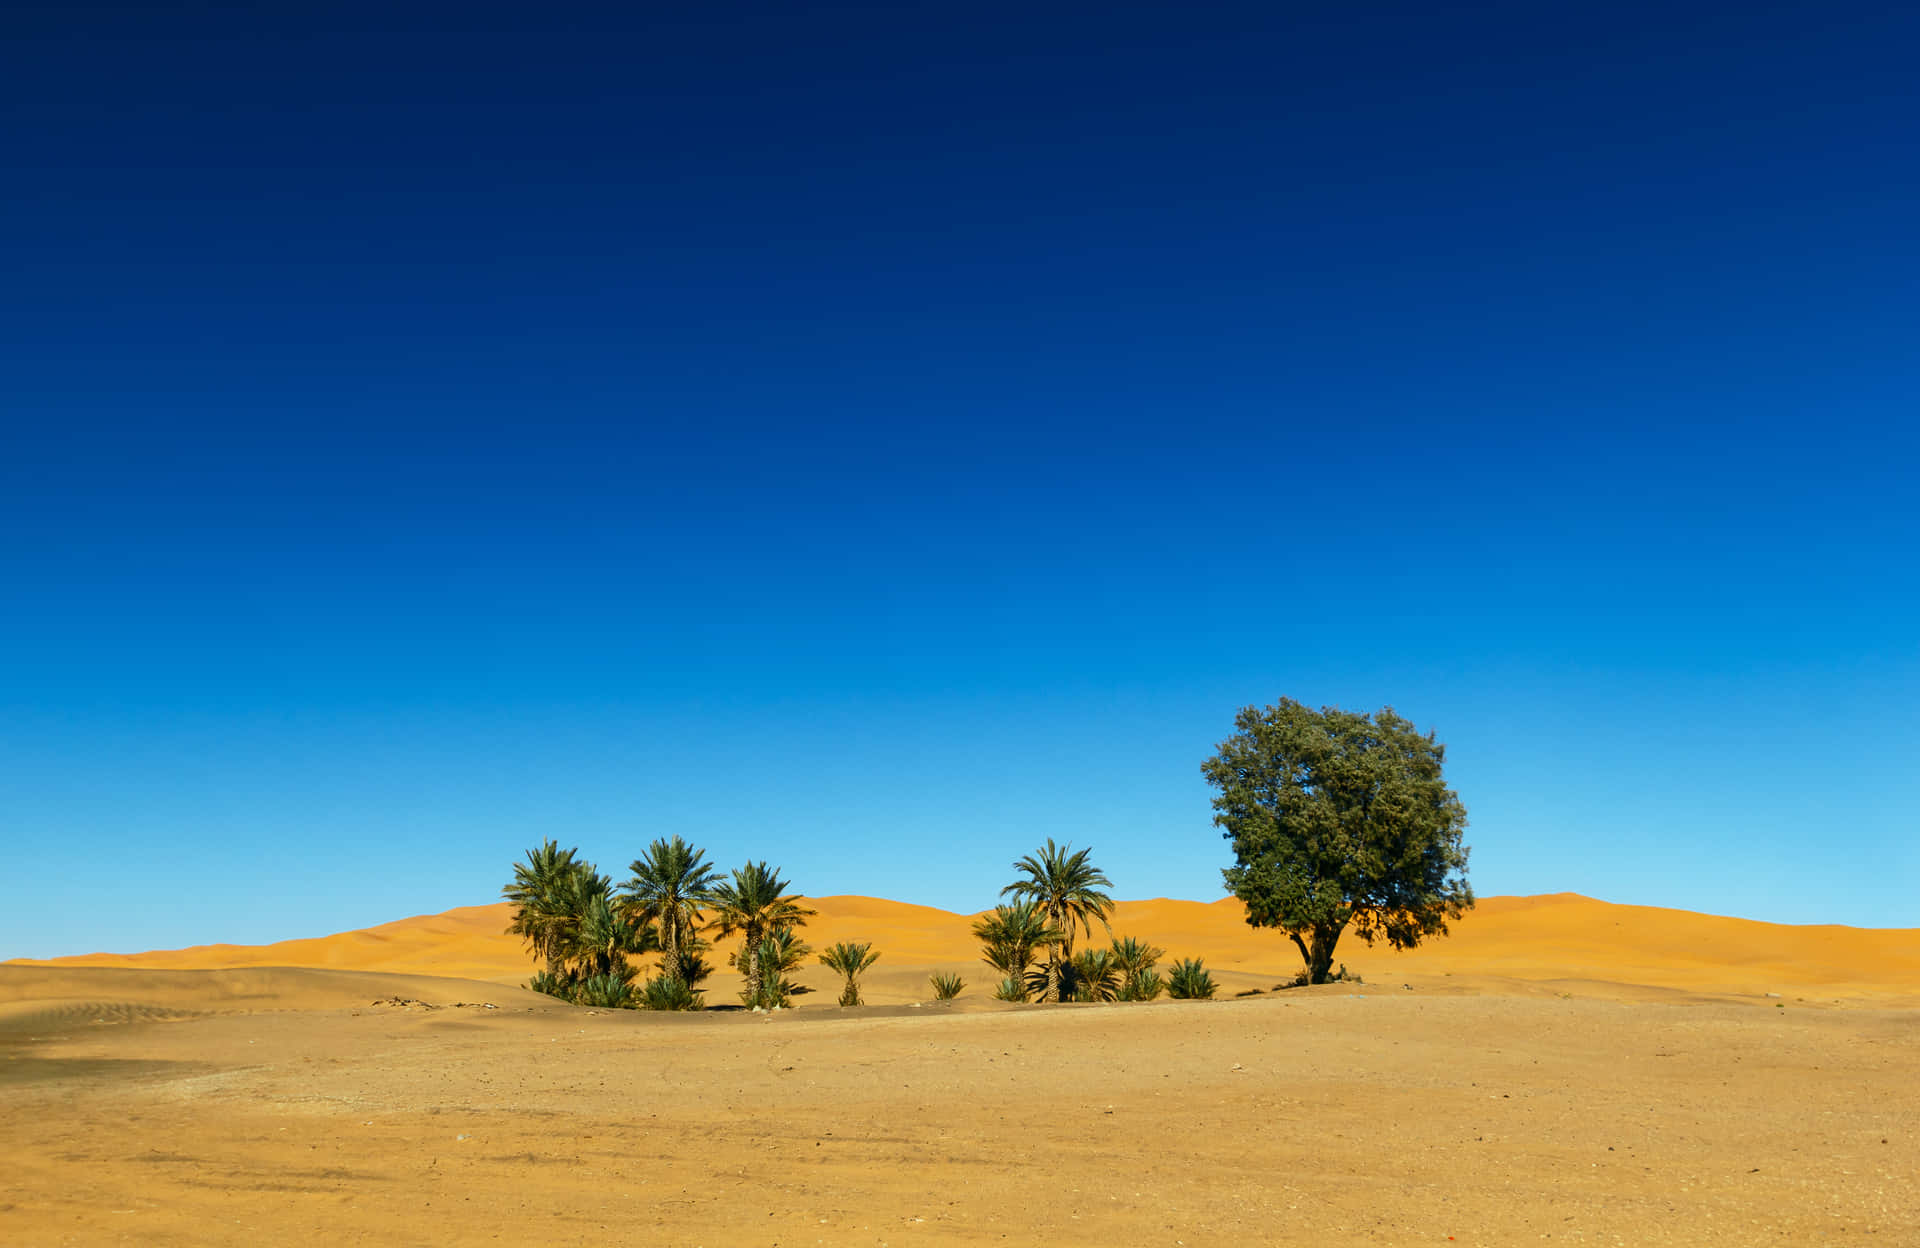 Unascoperta Di Solitudine In Un Deserto